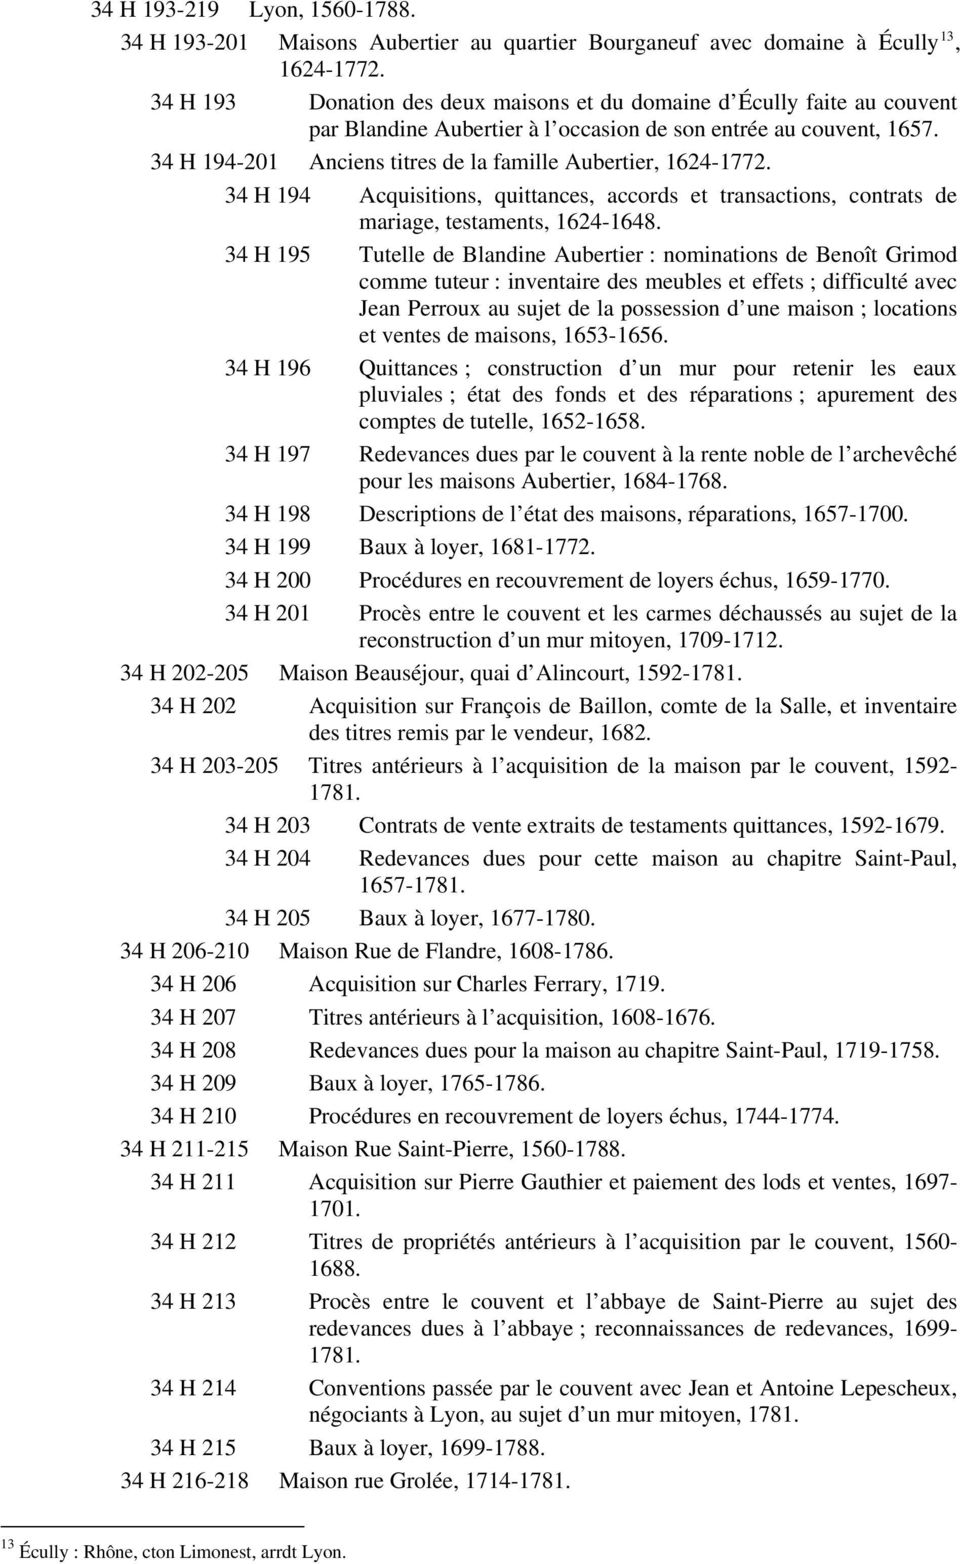 34 H 194-201 Anciens titres de la famille Aubertier, 1624-1772. 34 H 194 Acquisitions, quittances, accords et transactions, contrats de mariage, testaments, 1624-1648.